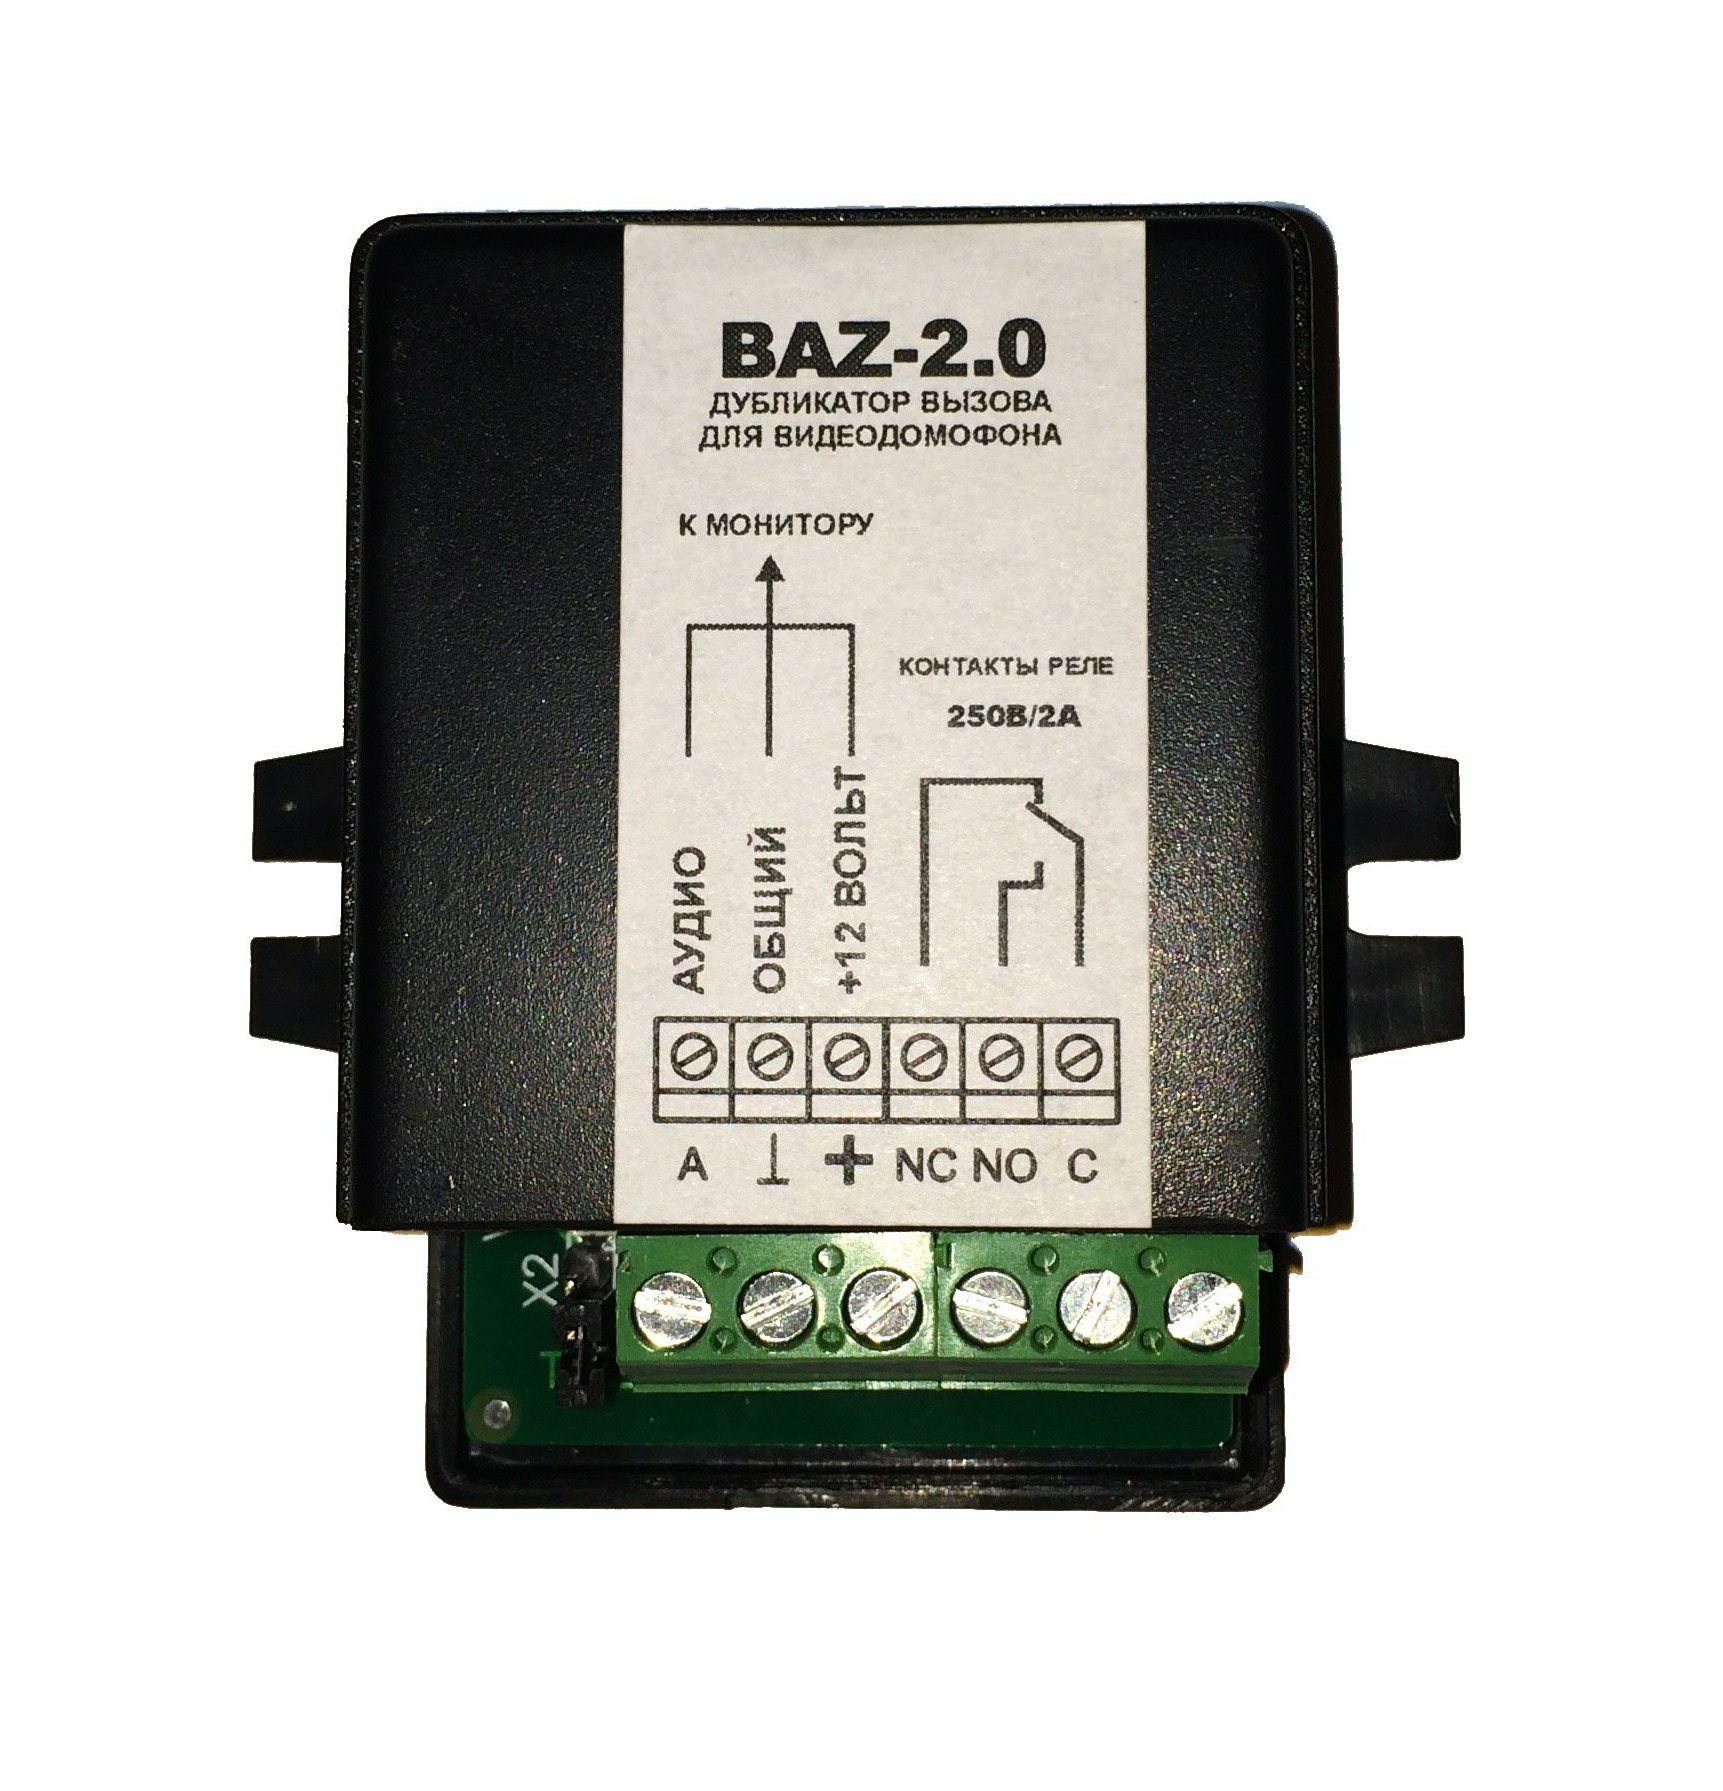 Купить дубликатор вызова видеодомофона "видеотехнология" baz-2.0 (предназначен для дублирования сигнала вызова монитора видеодомофона) | КилоВатт